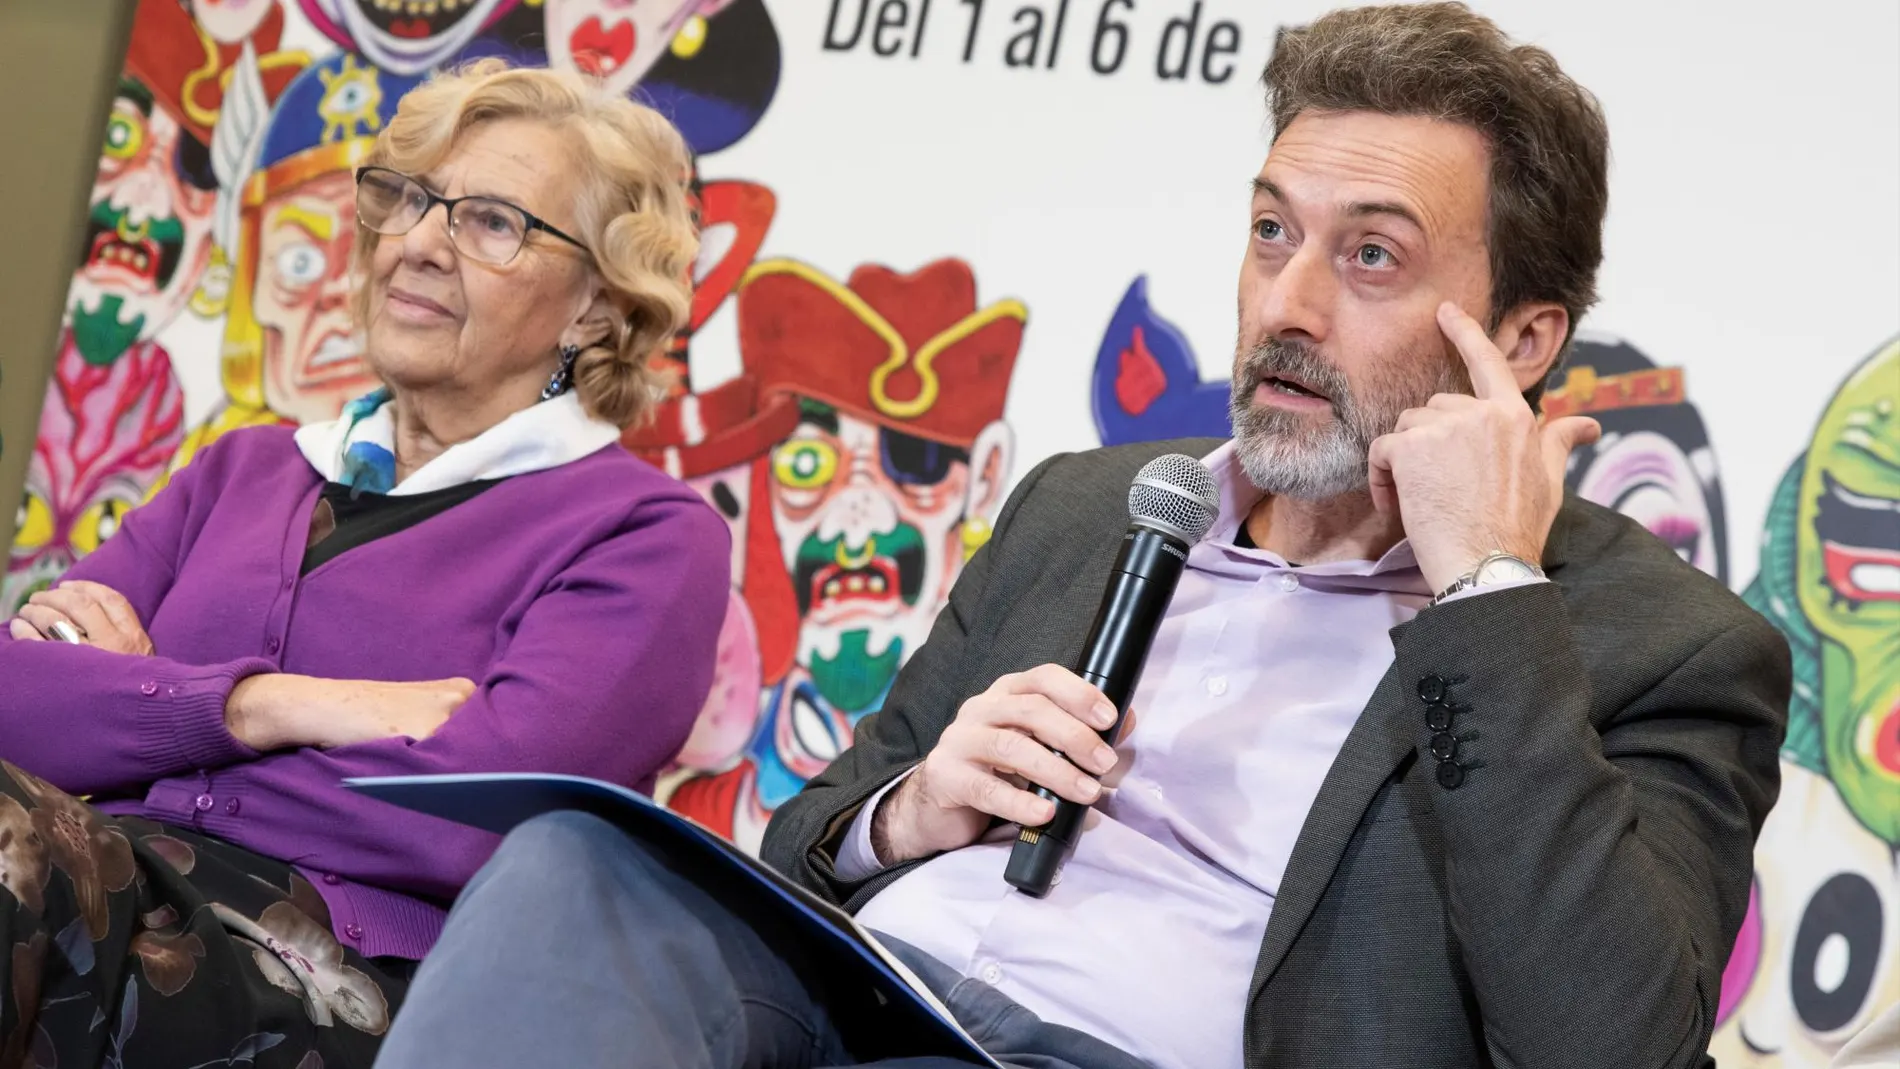 Mauricio Valiente junto a la alcaldesa de Madrid, Manuela Carmena, durante presentación de la programación del carnaval 2019 en el Mercado de Prosperidad, el pasado 22 de febrero